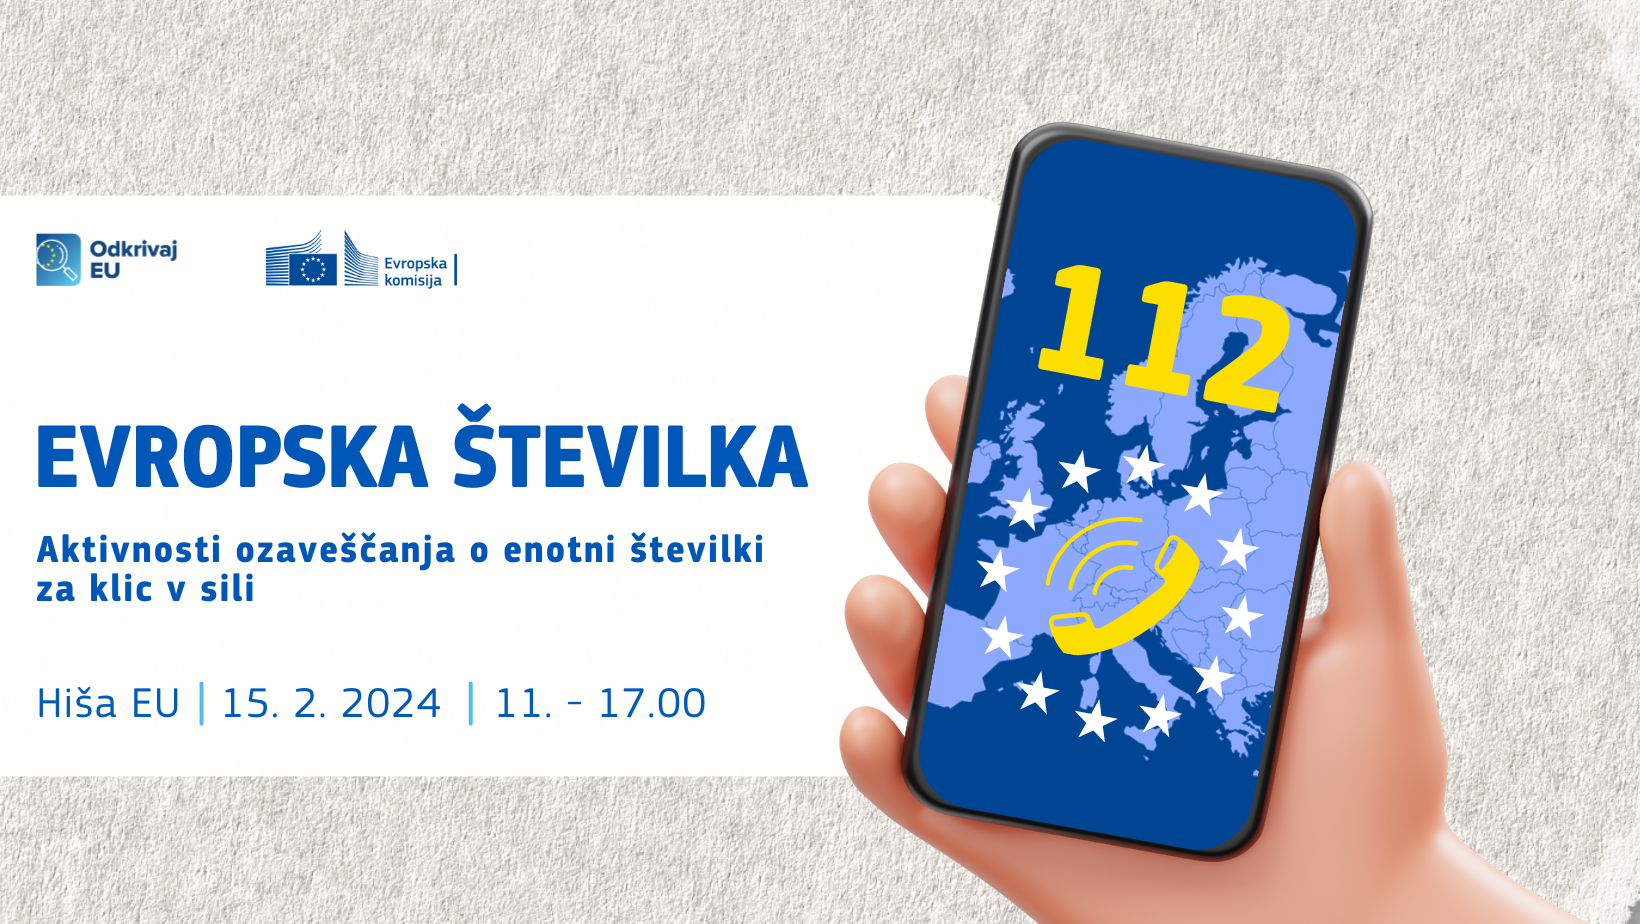 Evropska enotna številka za klic v sili 112 (Foto: grafika z mobilnim telefonom na katerem je izpisana št. 112, telefonska slušalka in evropske zvezdice. Ob telefonu je izpisan naslov dogodka in kratek opis, lokacija, datum in ura, ter logotip Odkrivaj EU in Evropske komisije)